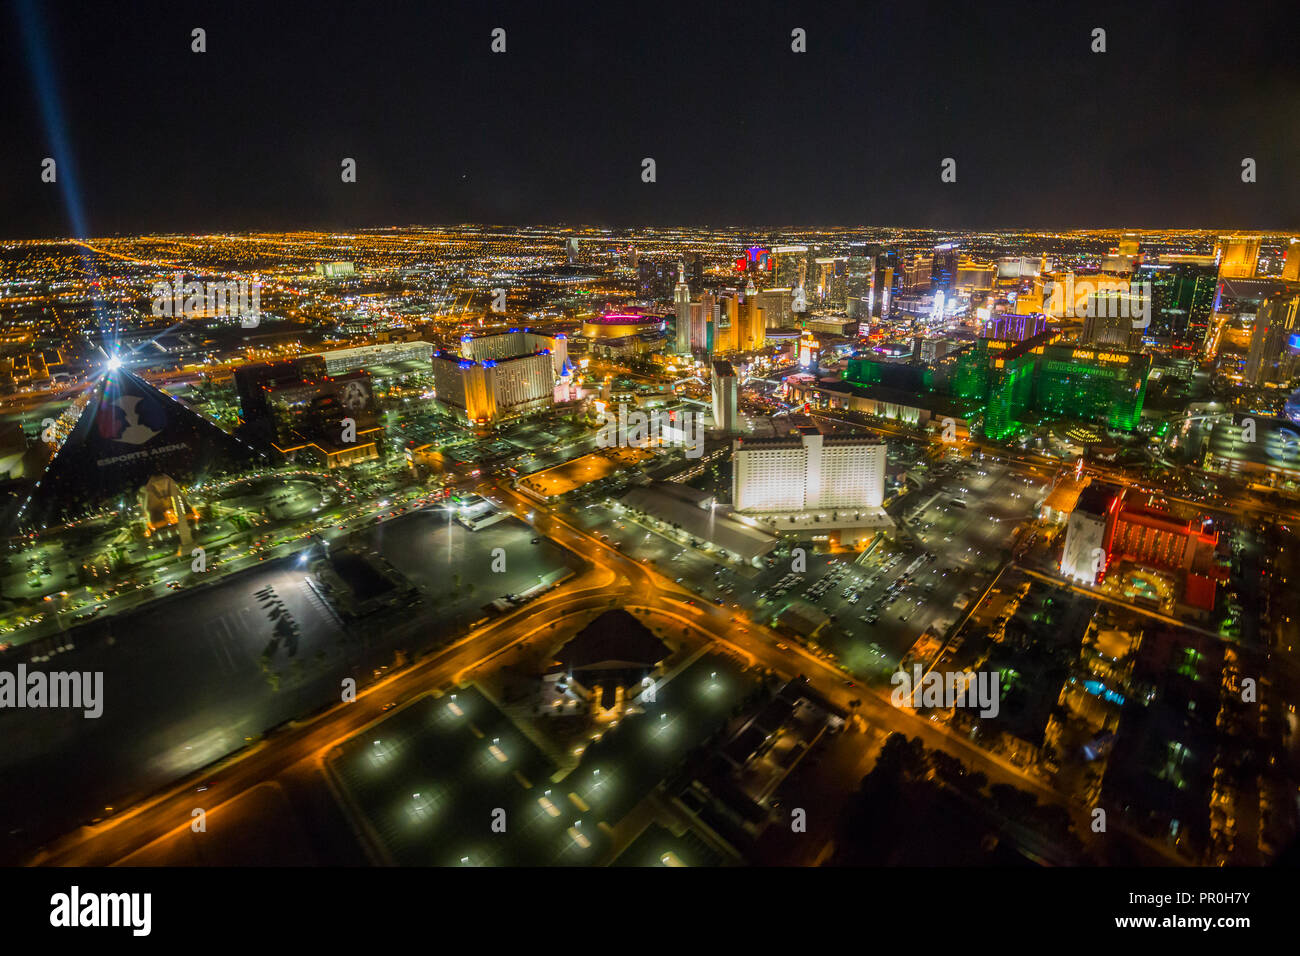 Vue sur Las Vegas et la bande à partir d'hélicoptères de la nuit, Las Vegas, Nevada, États-Unis d'Amérique, Amérique du Nord Banque D'Images